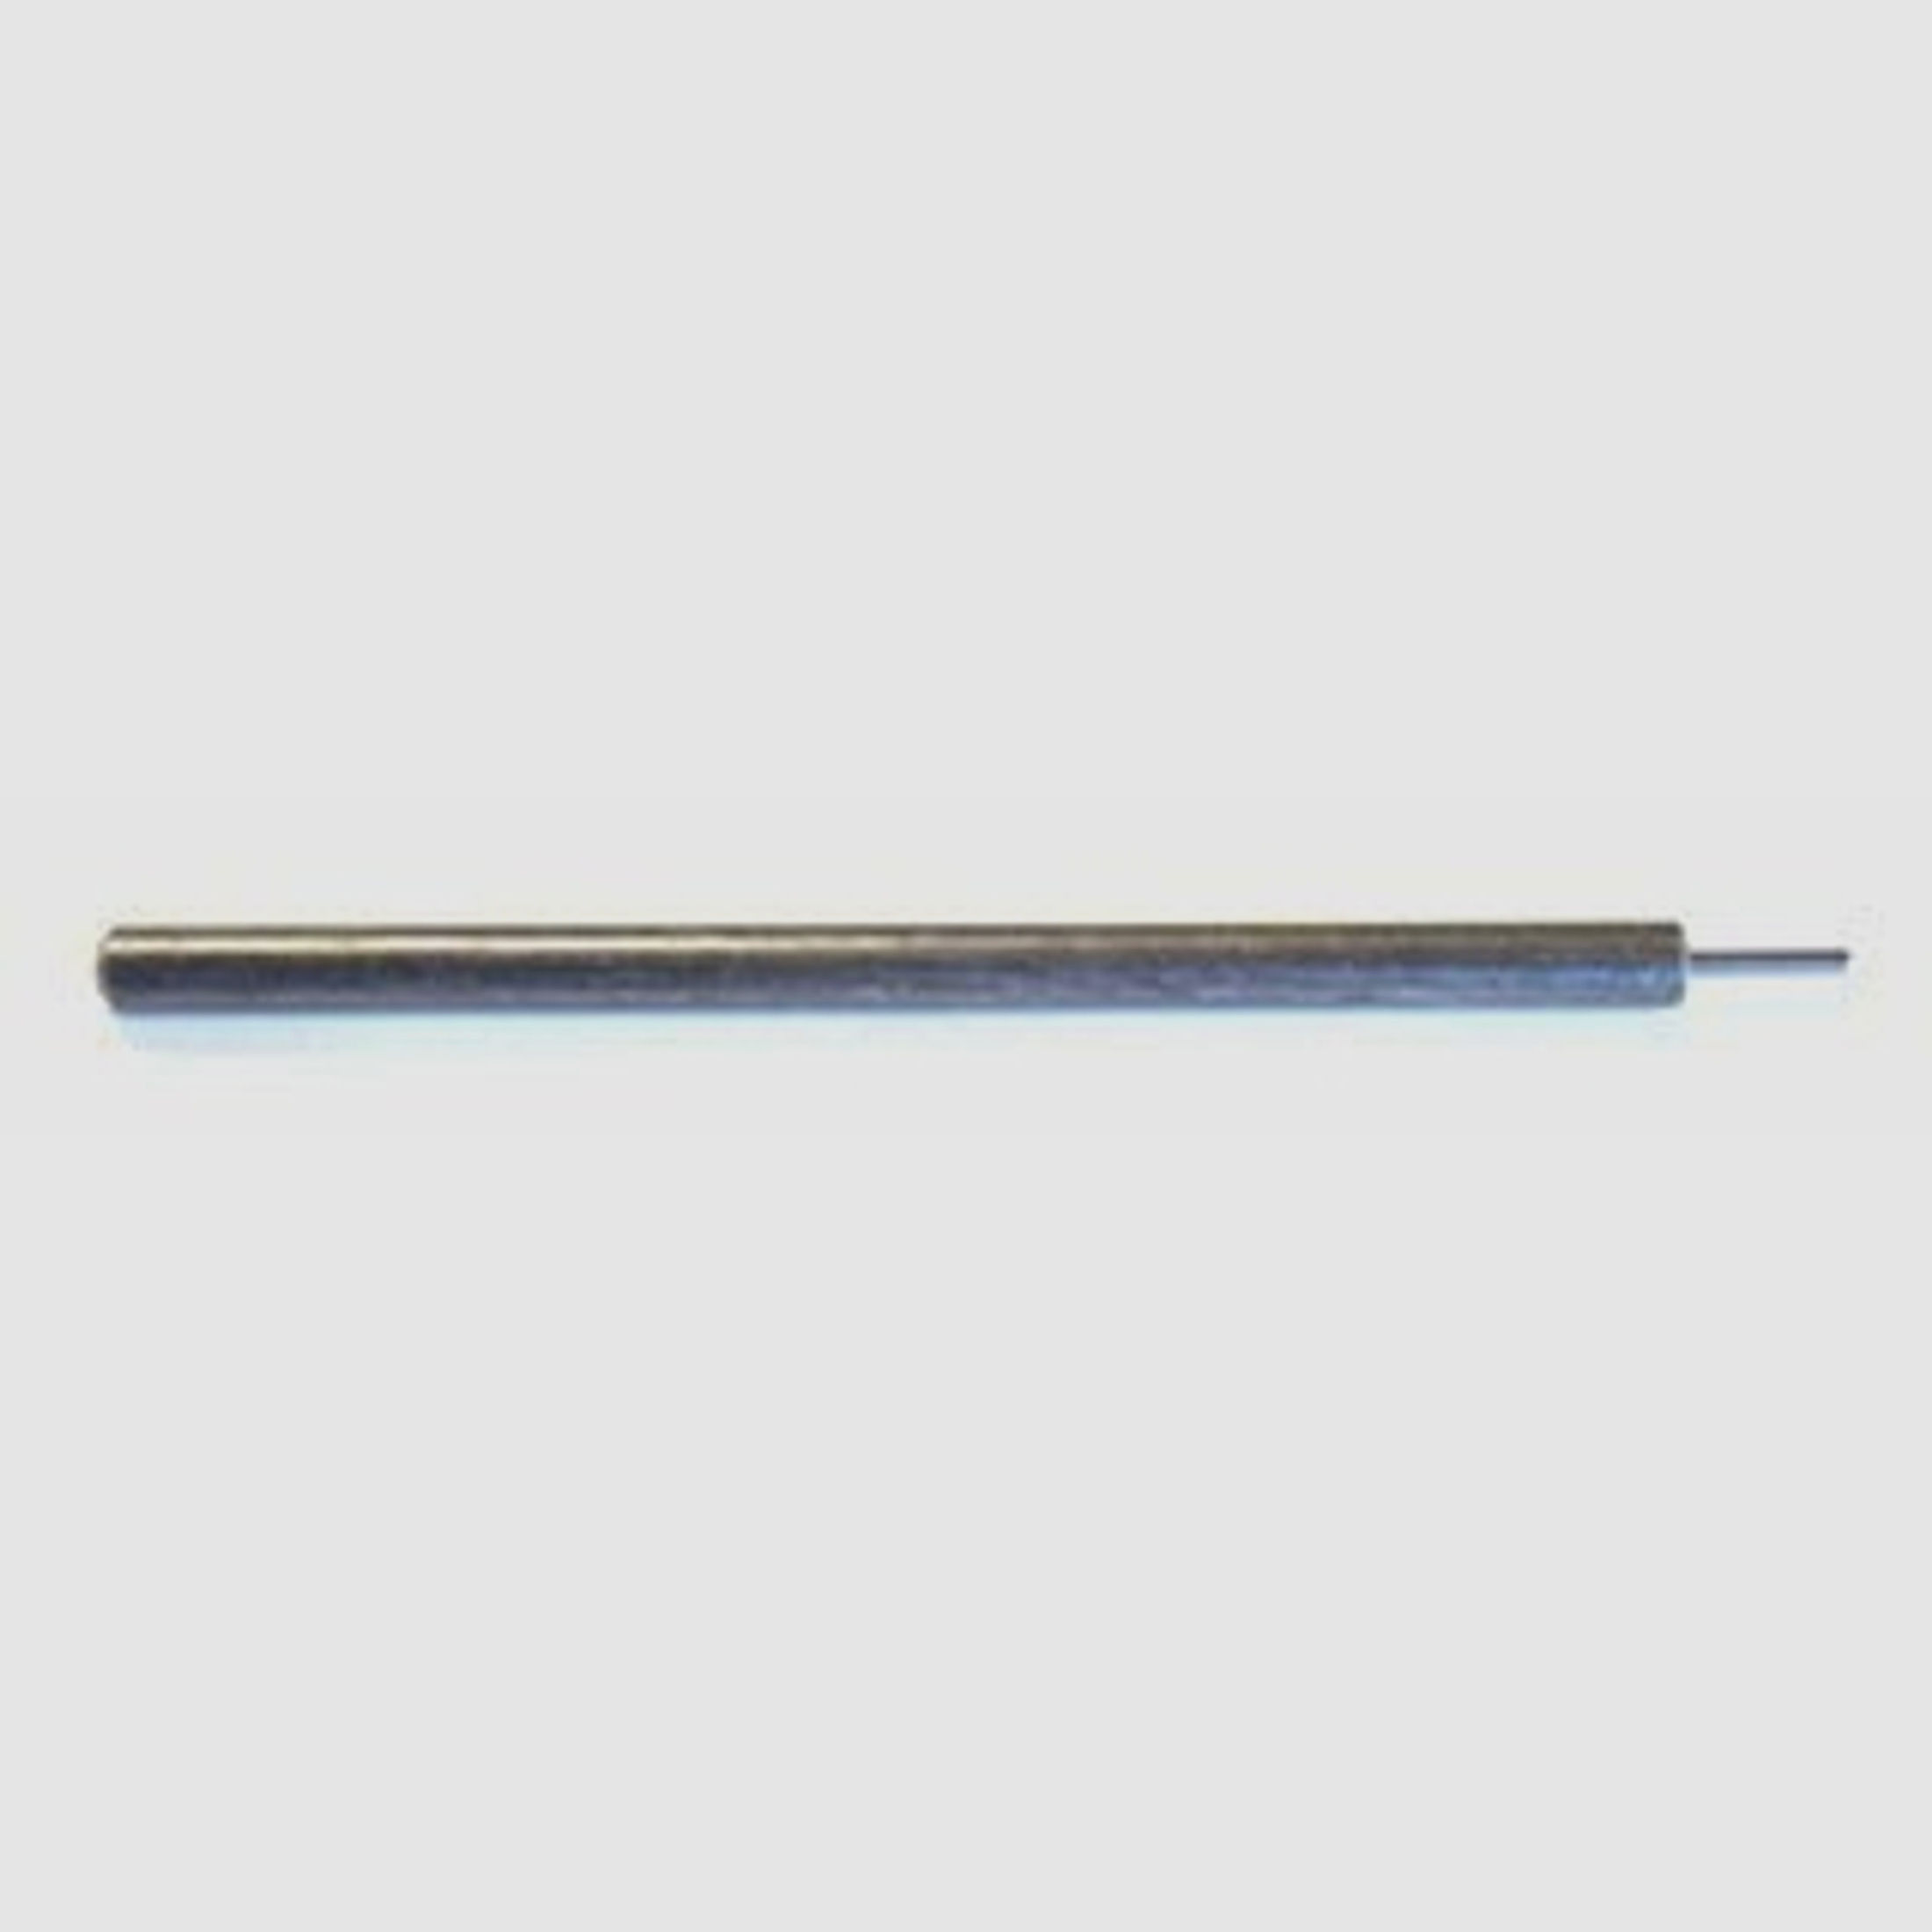 LEE Universal Decapping Pin #90783 Ersatz Zündhütchenausstoßer-Stift | Ersatzteil für #90292 Matrize